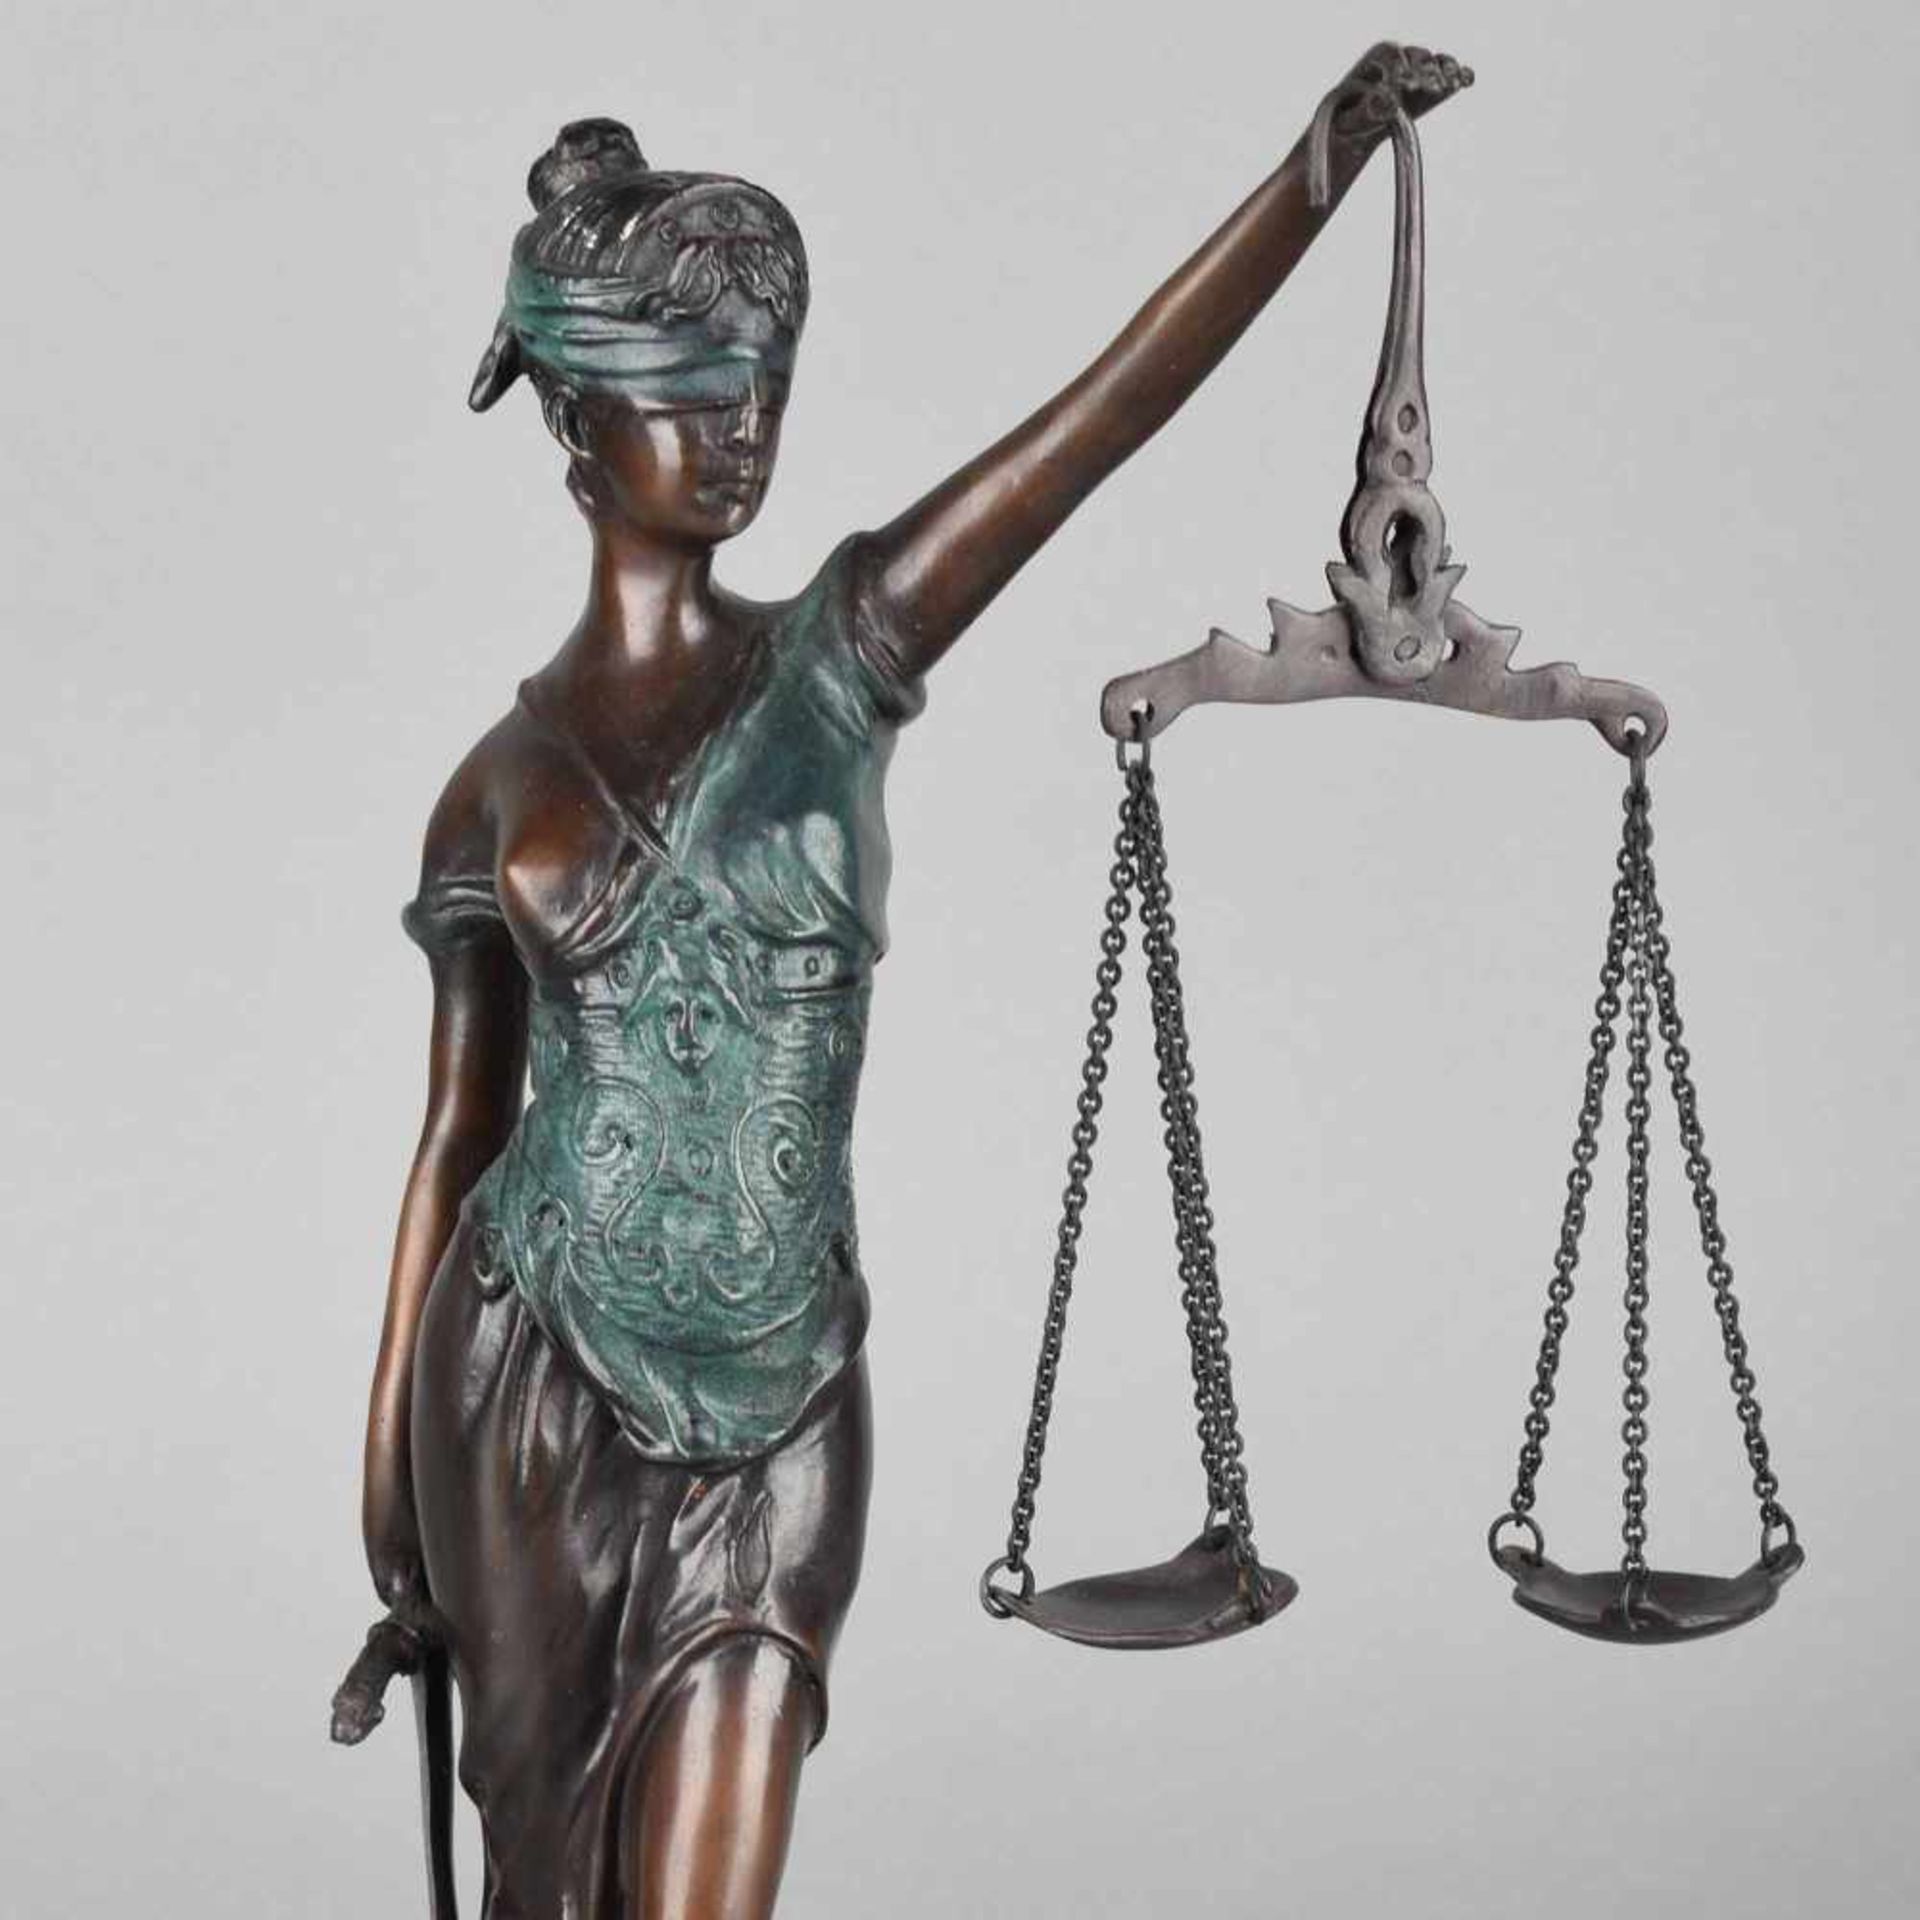 Allegorie der Gerechtigkeit nach dem Vorbild der bekannten Justitiadarstellung des Bildhauers